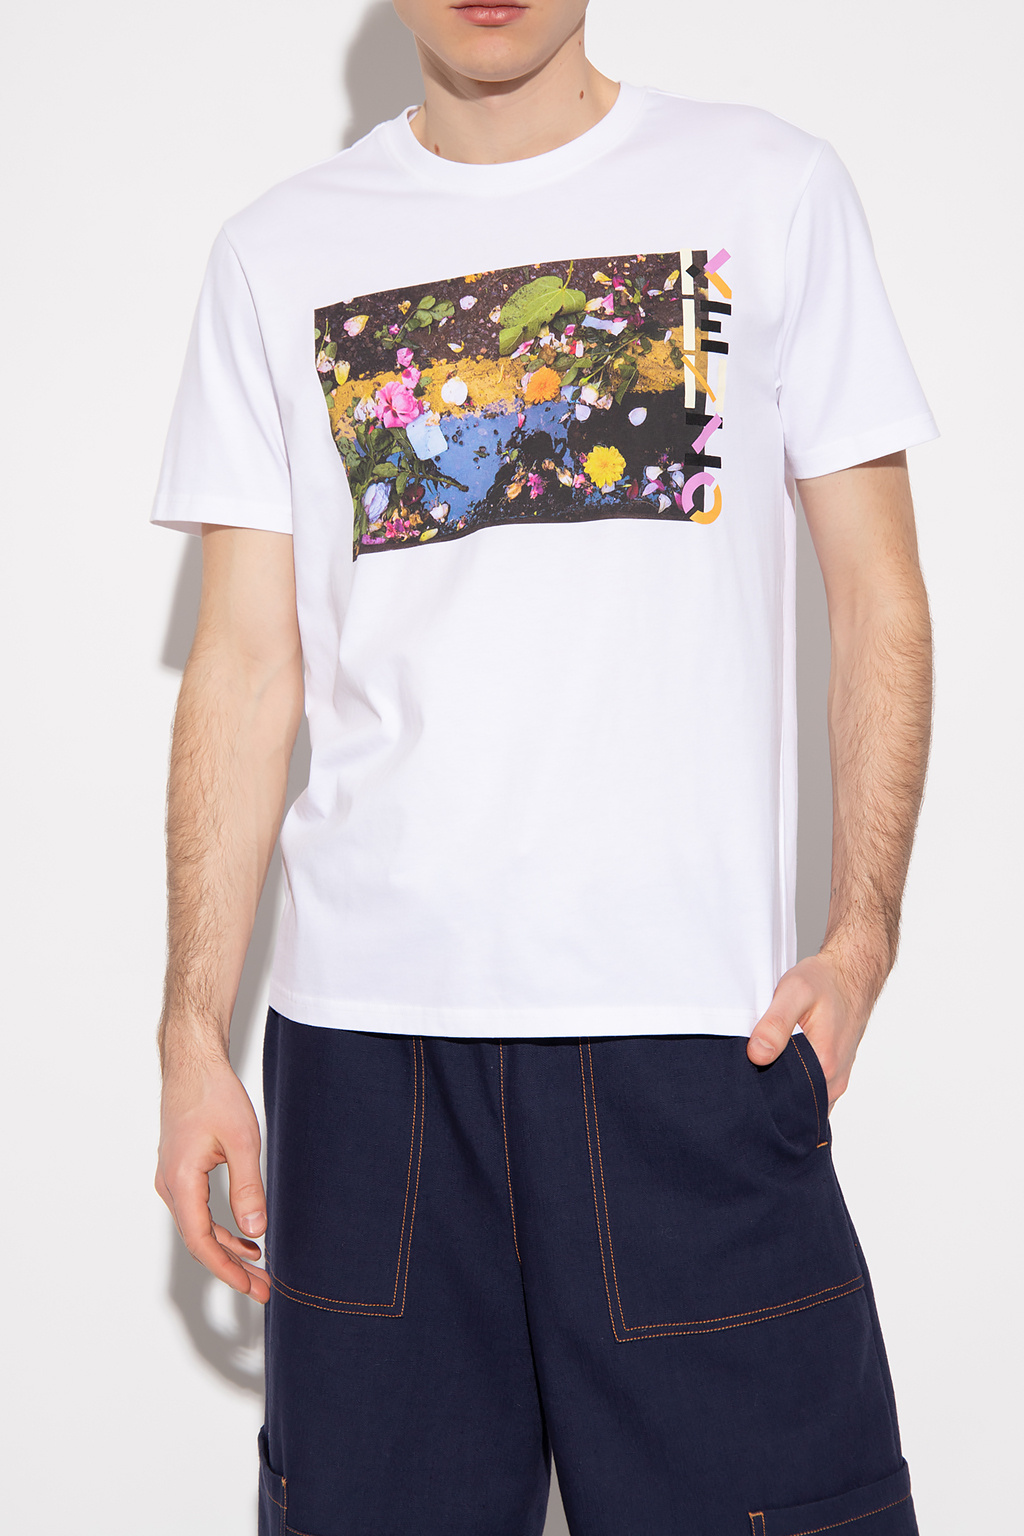 buurman periode creatief shirt | IetpShops - Origineel t-shirt met zeer geslaagde kleuren - Men's  Clothing | Kenzo Printed T